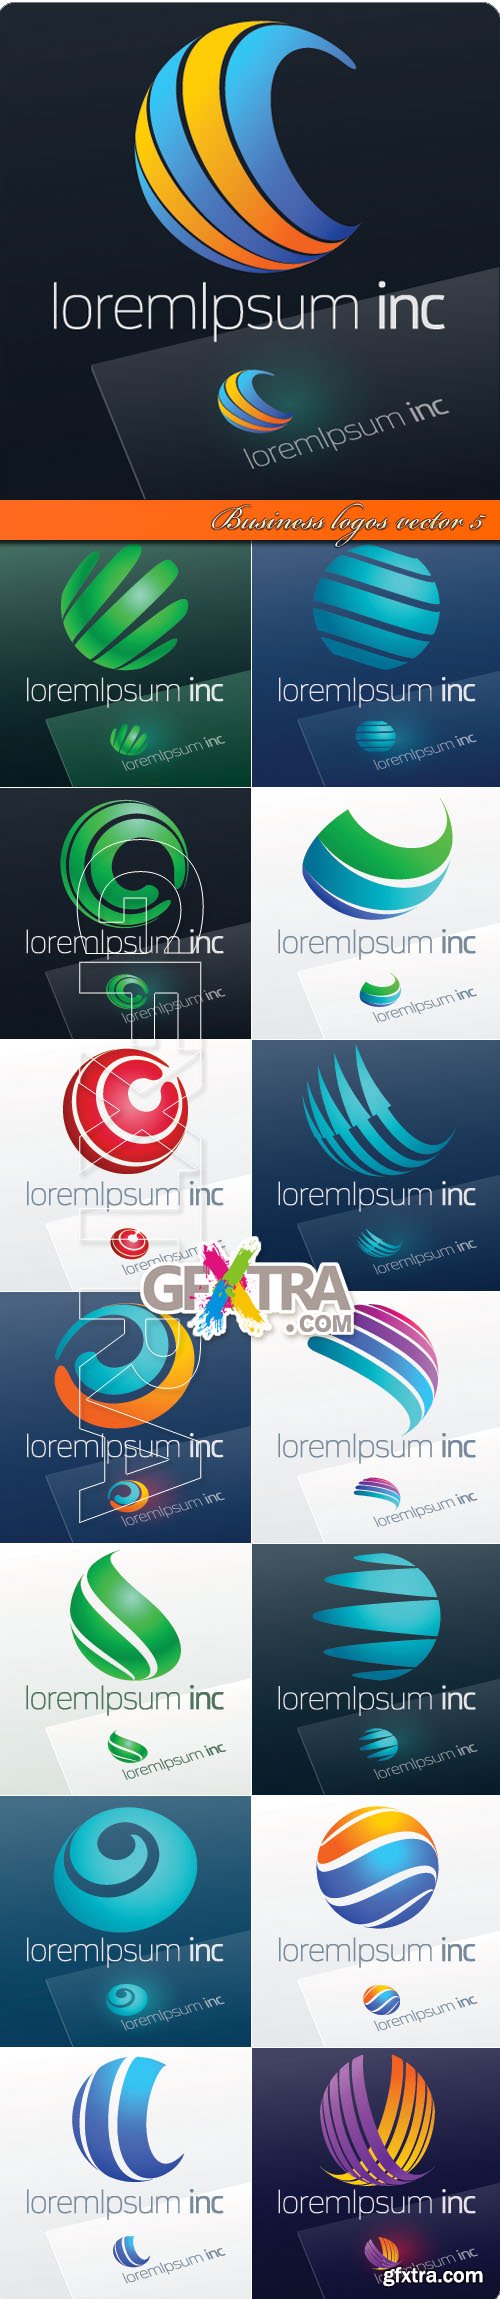 Business logos vector 5